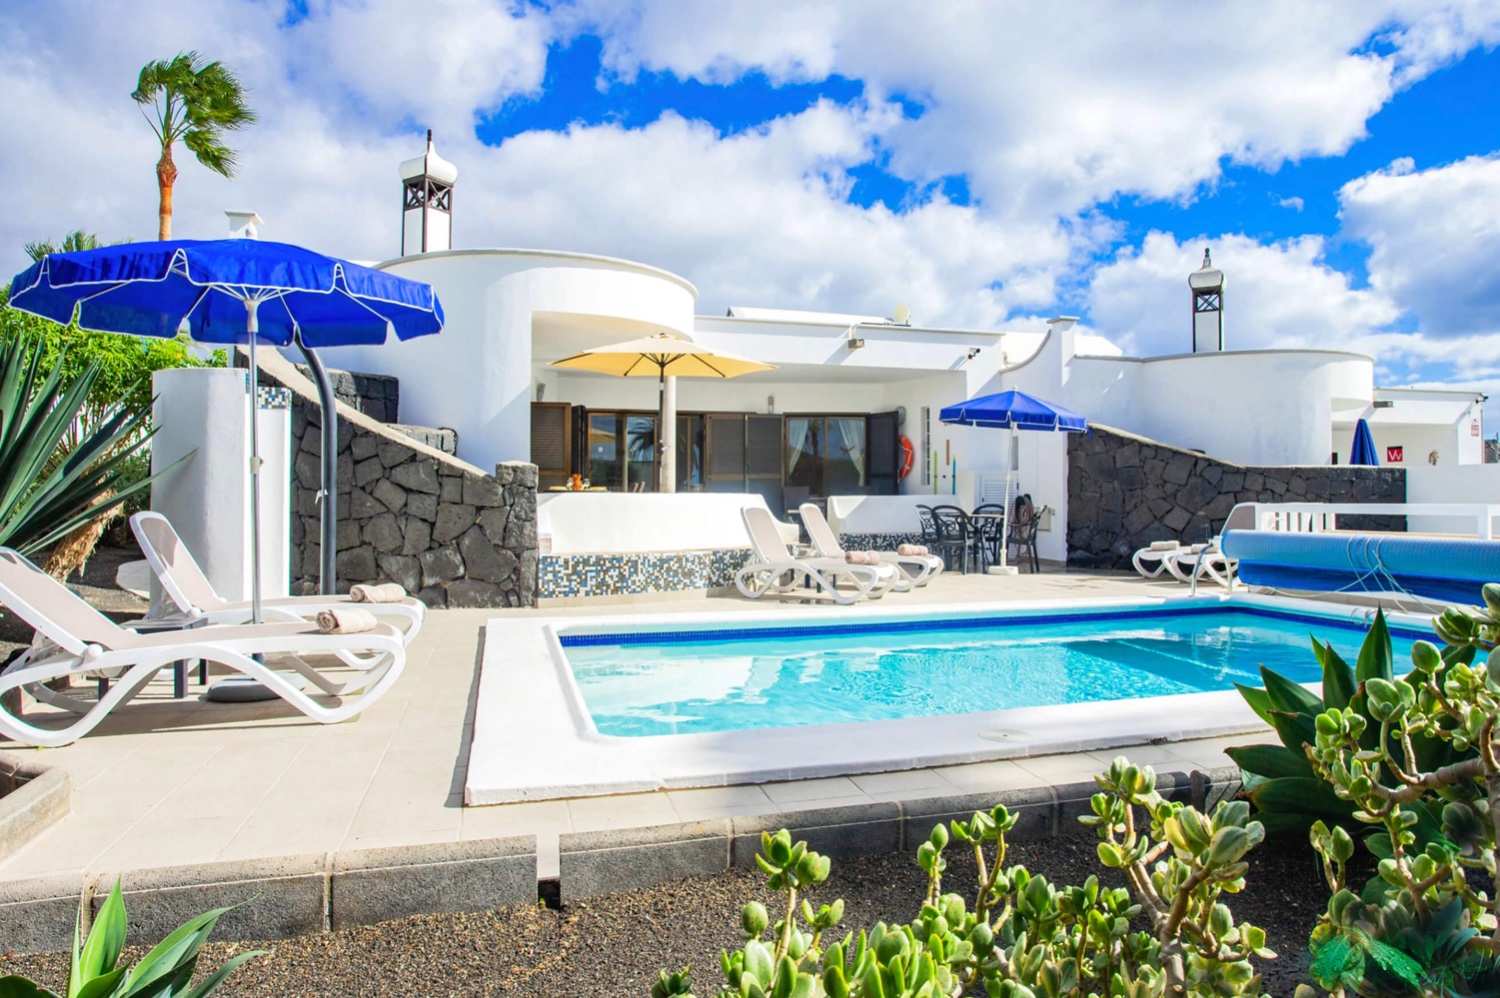 Haus mit drei Schlafzimmern und privatem beheiztem Pool in einer wunderschönen Wohnanlage in Playa Blanca im Süden der Insel